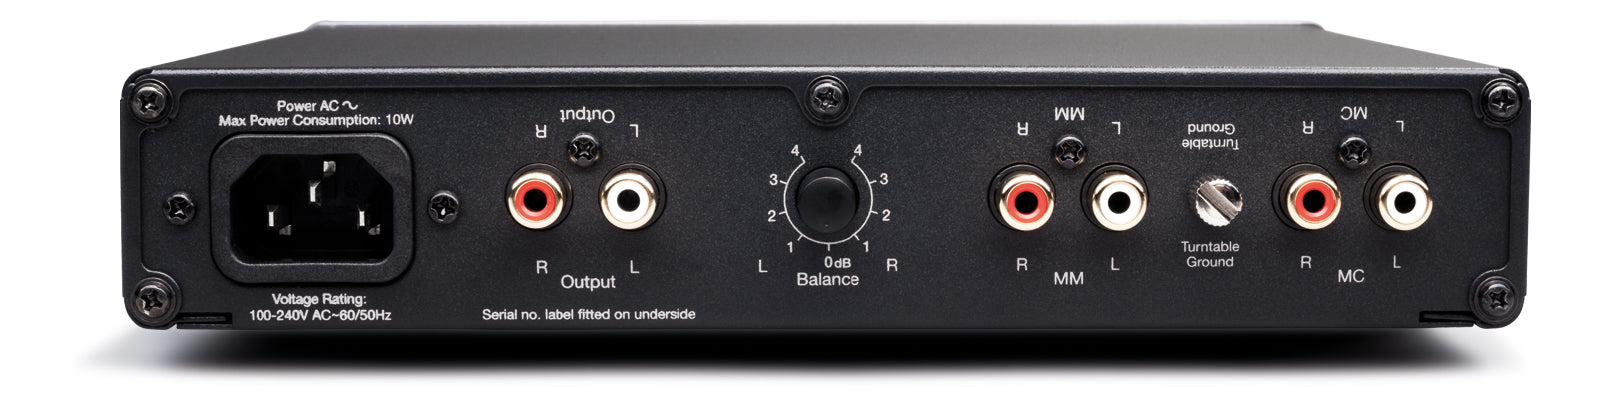 Cambridge Audio DUO - Préamplificateur Phono à bobine et aimant mobile